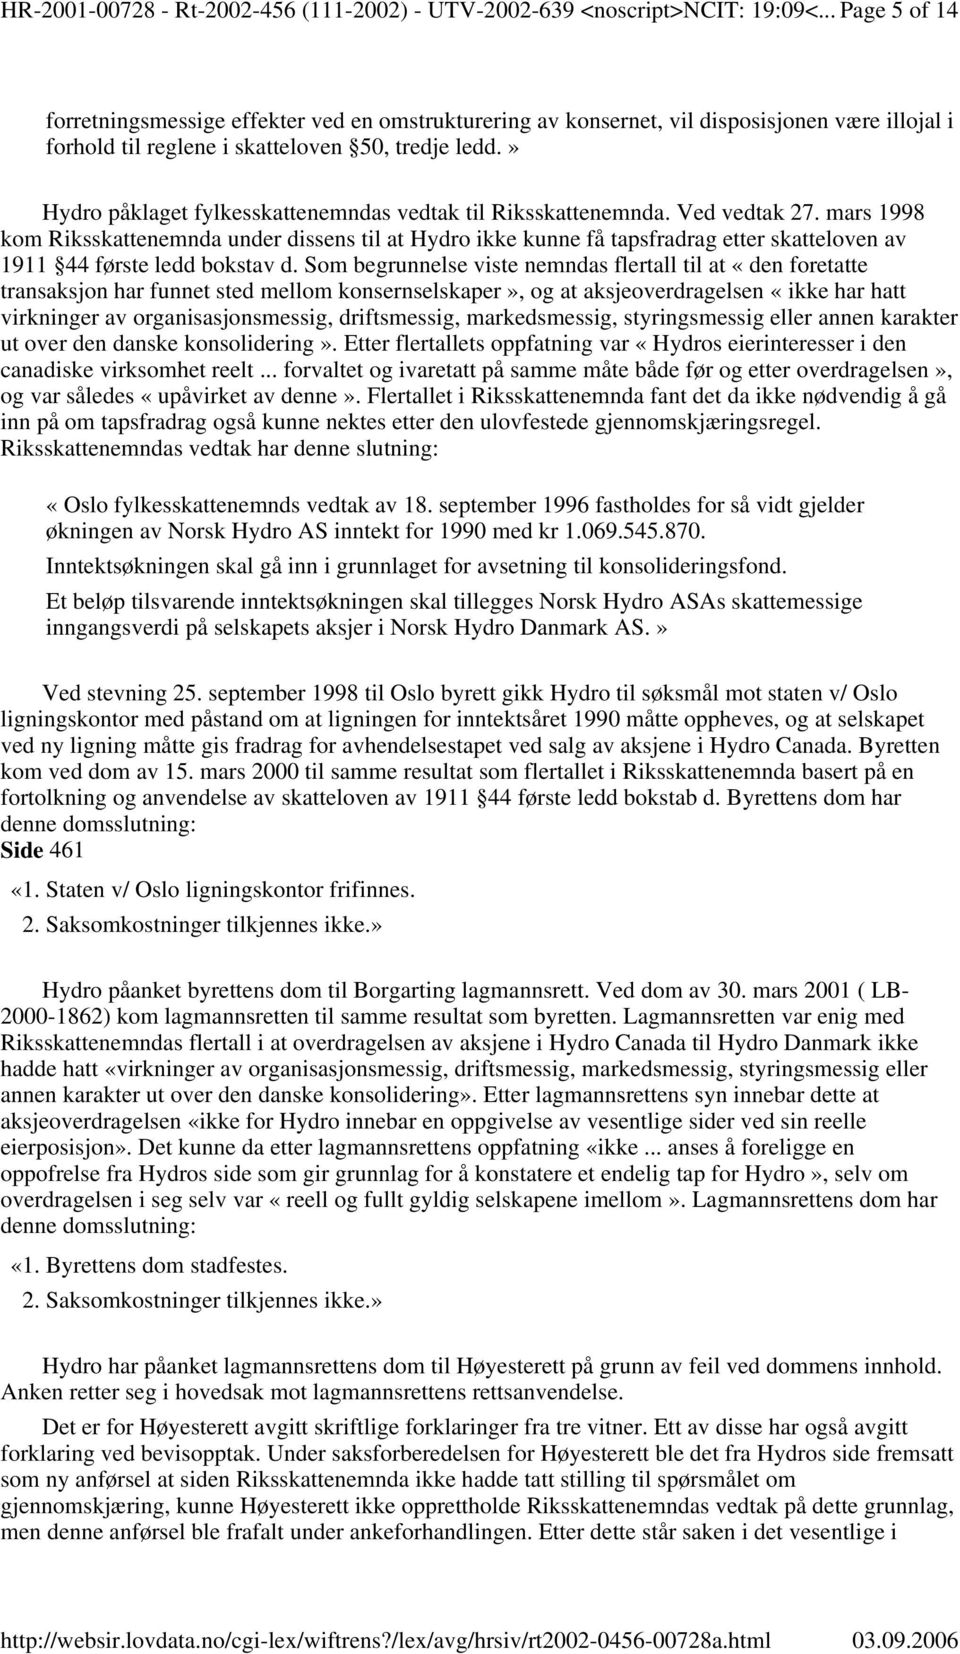 » Hydro påklaget fylkesskattenemndas vedtak til Riksskattenemnda. Ved vedtak 27.